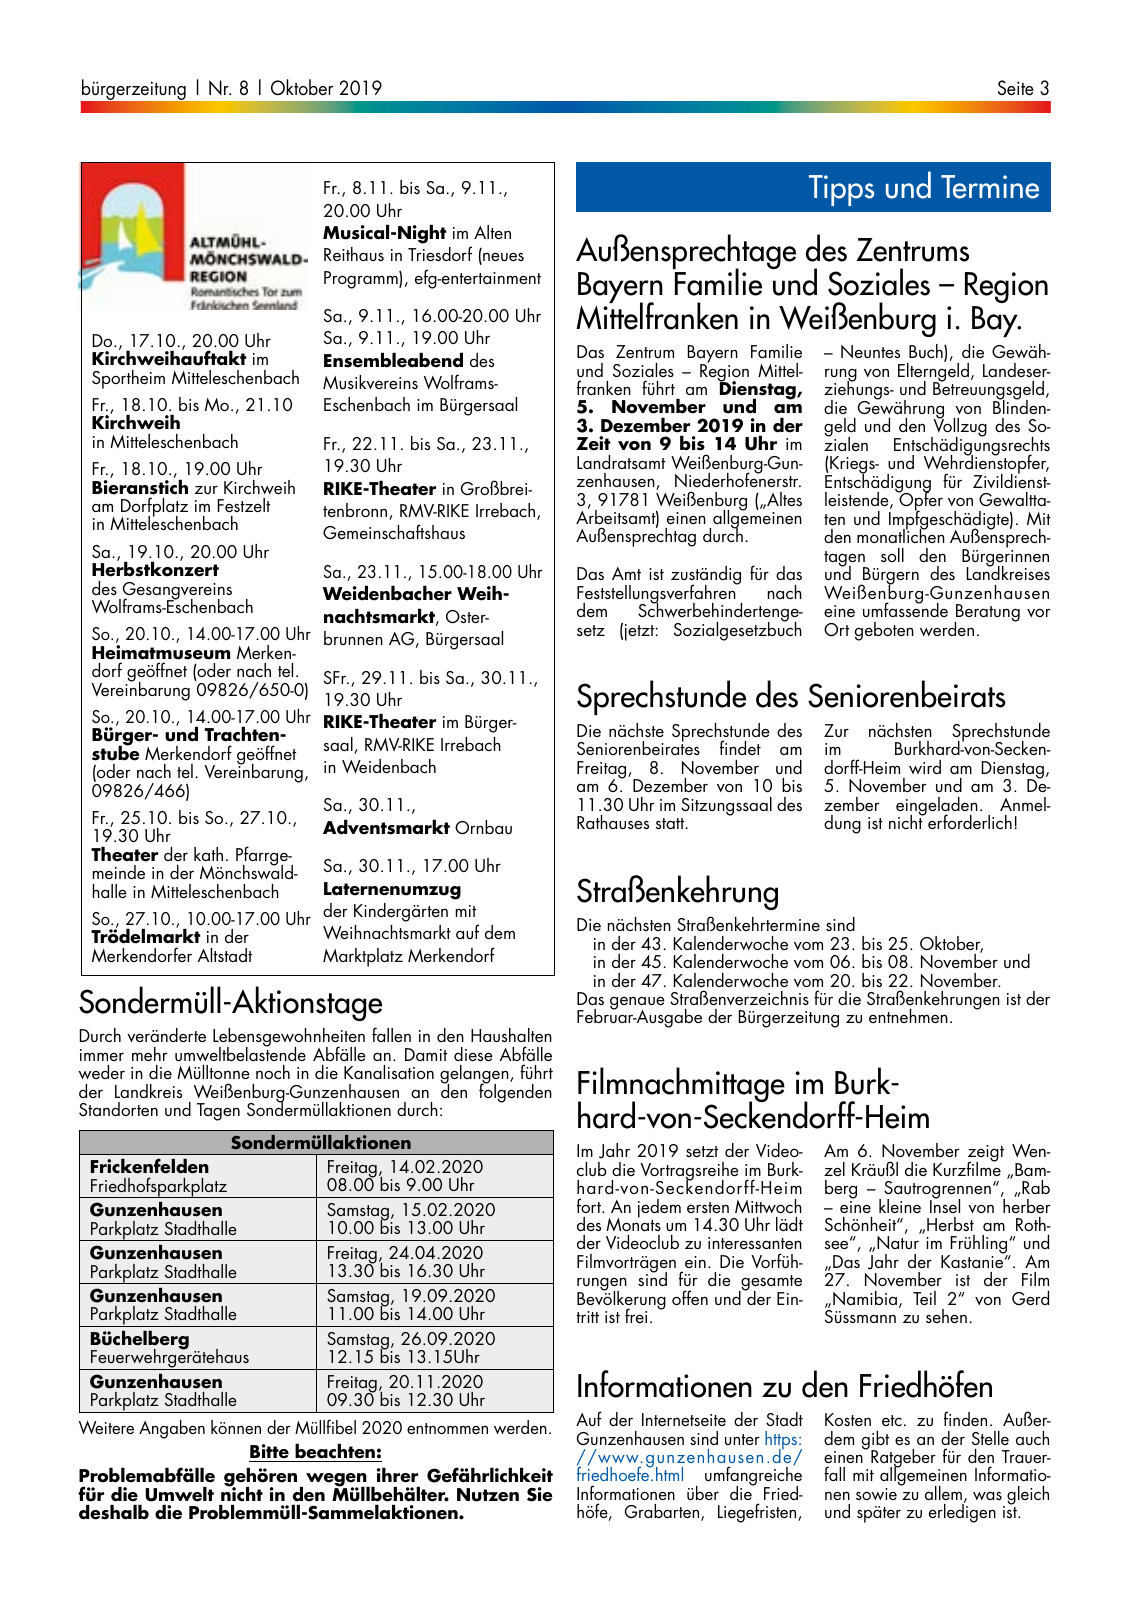 Vorschau buergerzeitung_10_2019 Seite 3